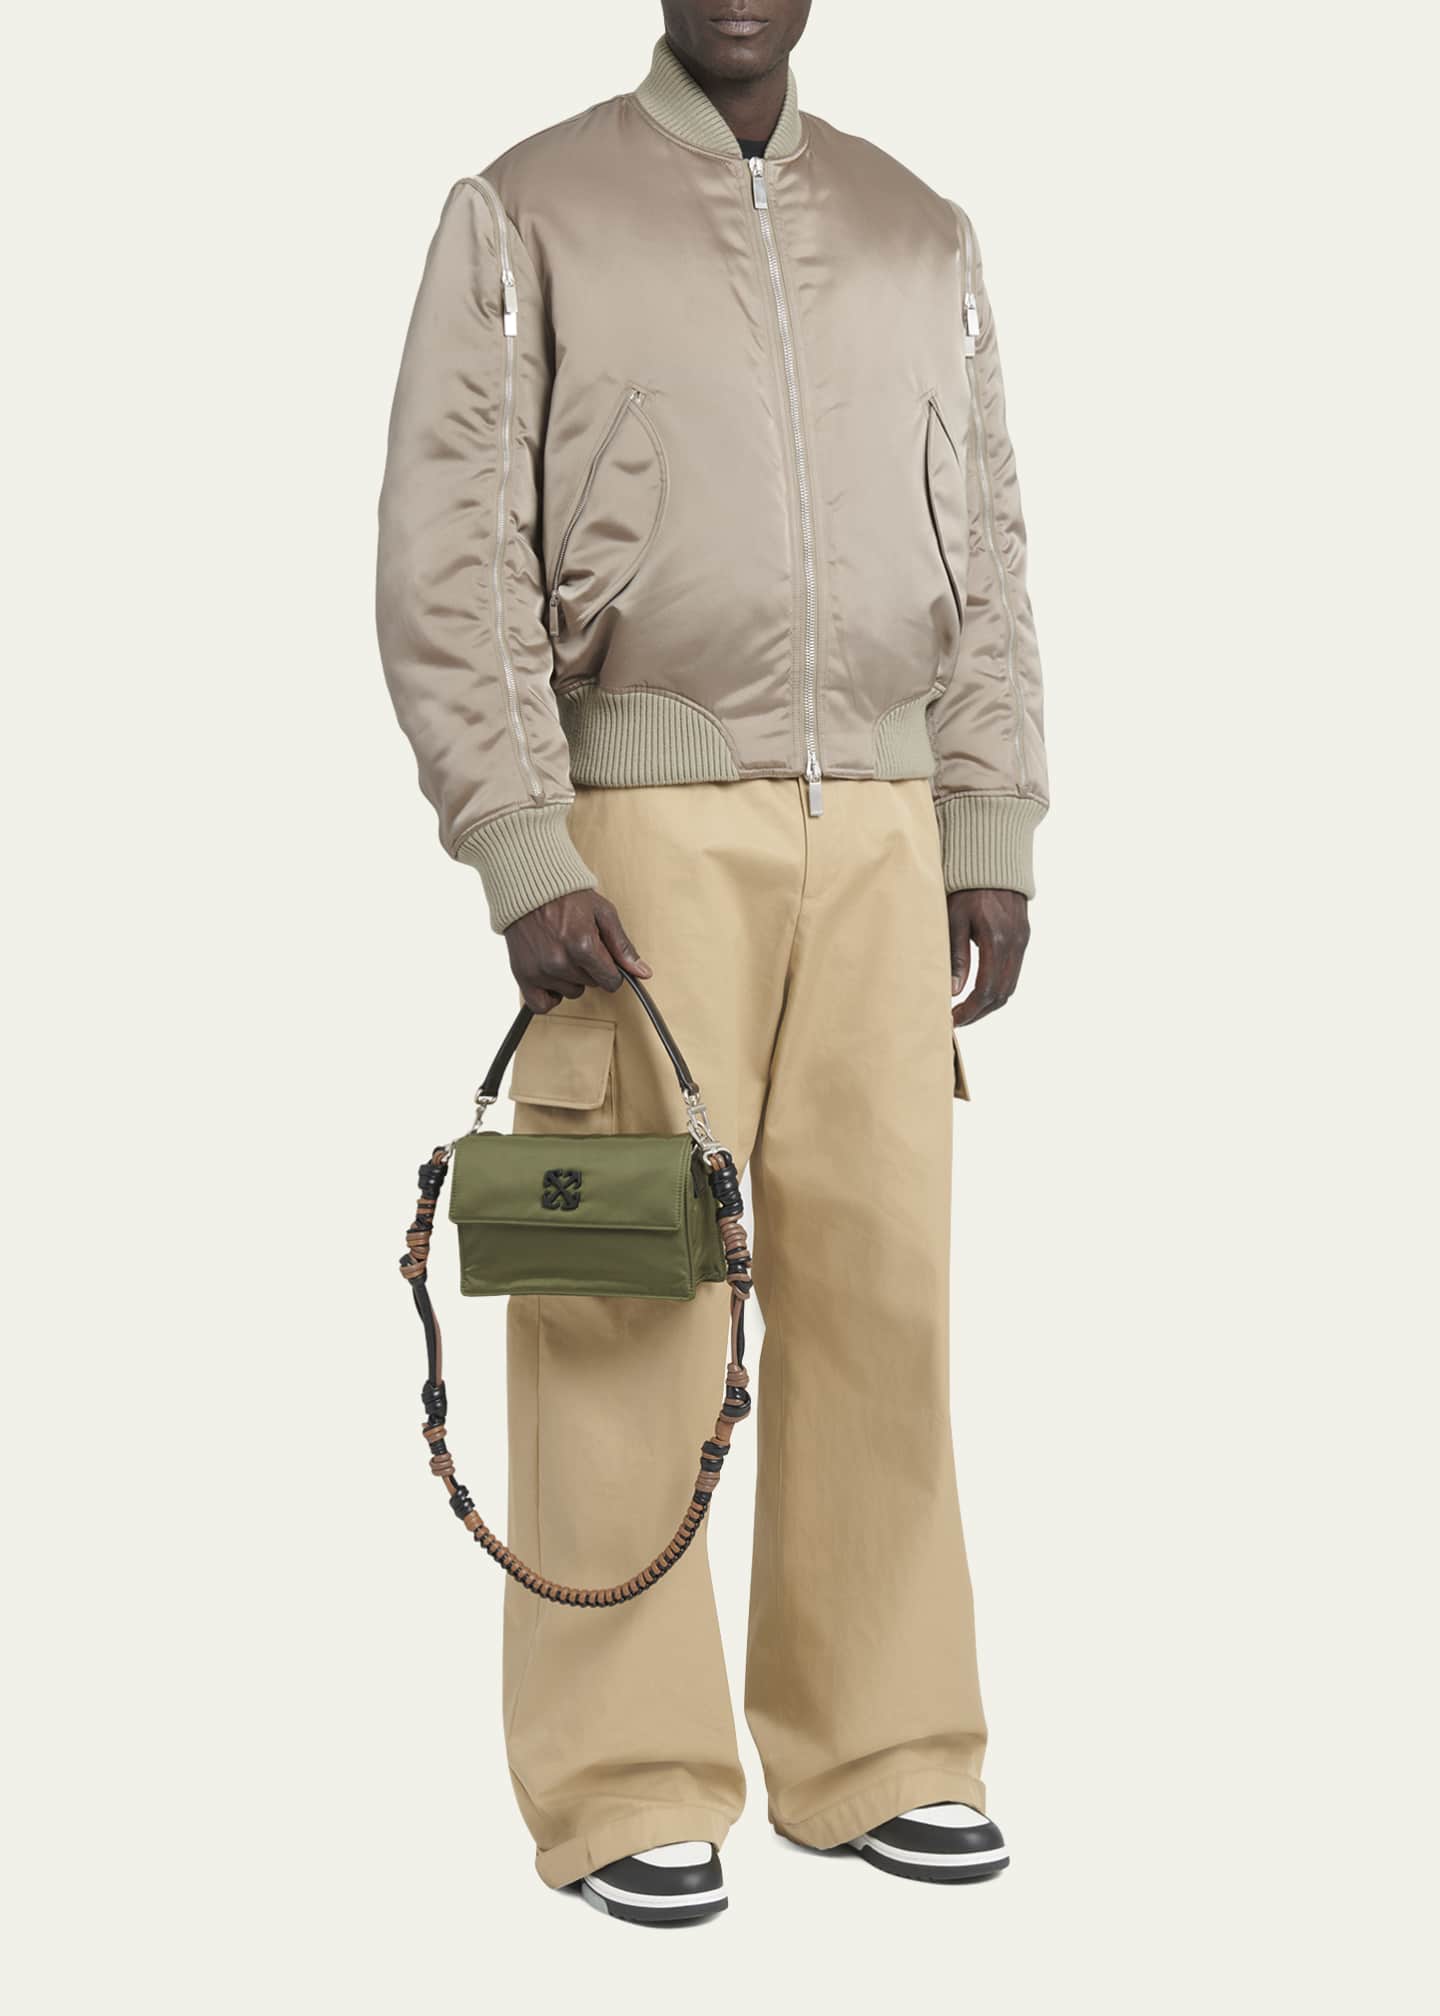 OFF-WHITE Soft Jitney 1.4 Leather-Trimmed Shell Messenger Bag for Men